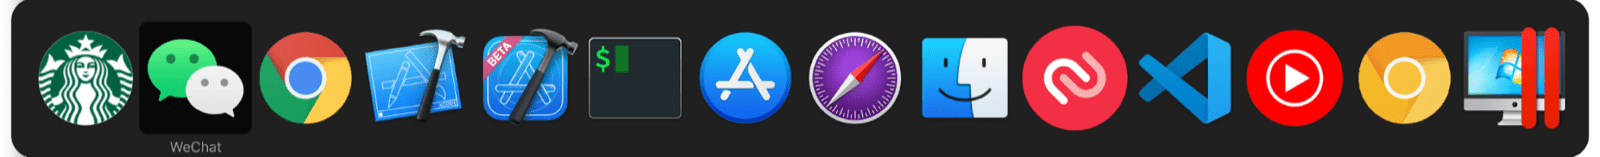 เครื่องมือสลับงานหลายอย่างพร้อมกันของ macOS จะมีมินิแอปควบคู่ไปกับแอป macOS ปกติ